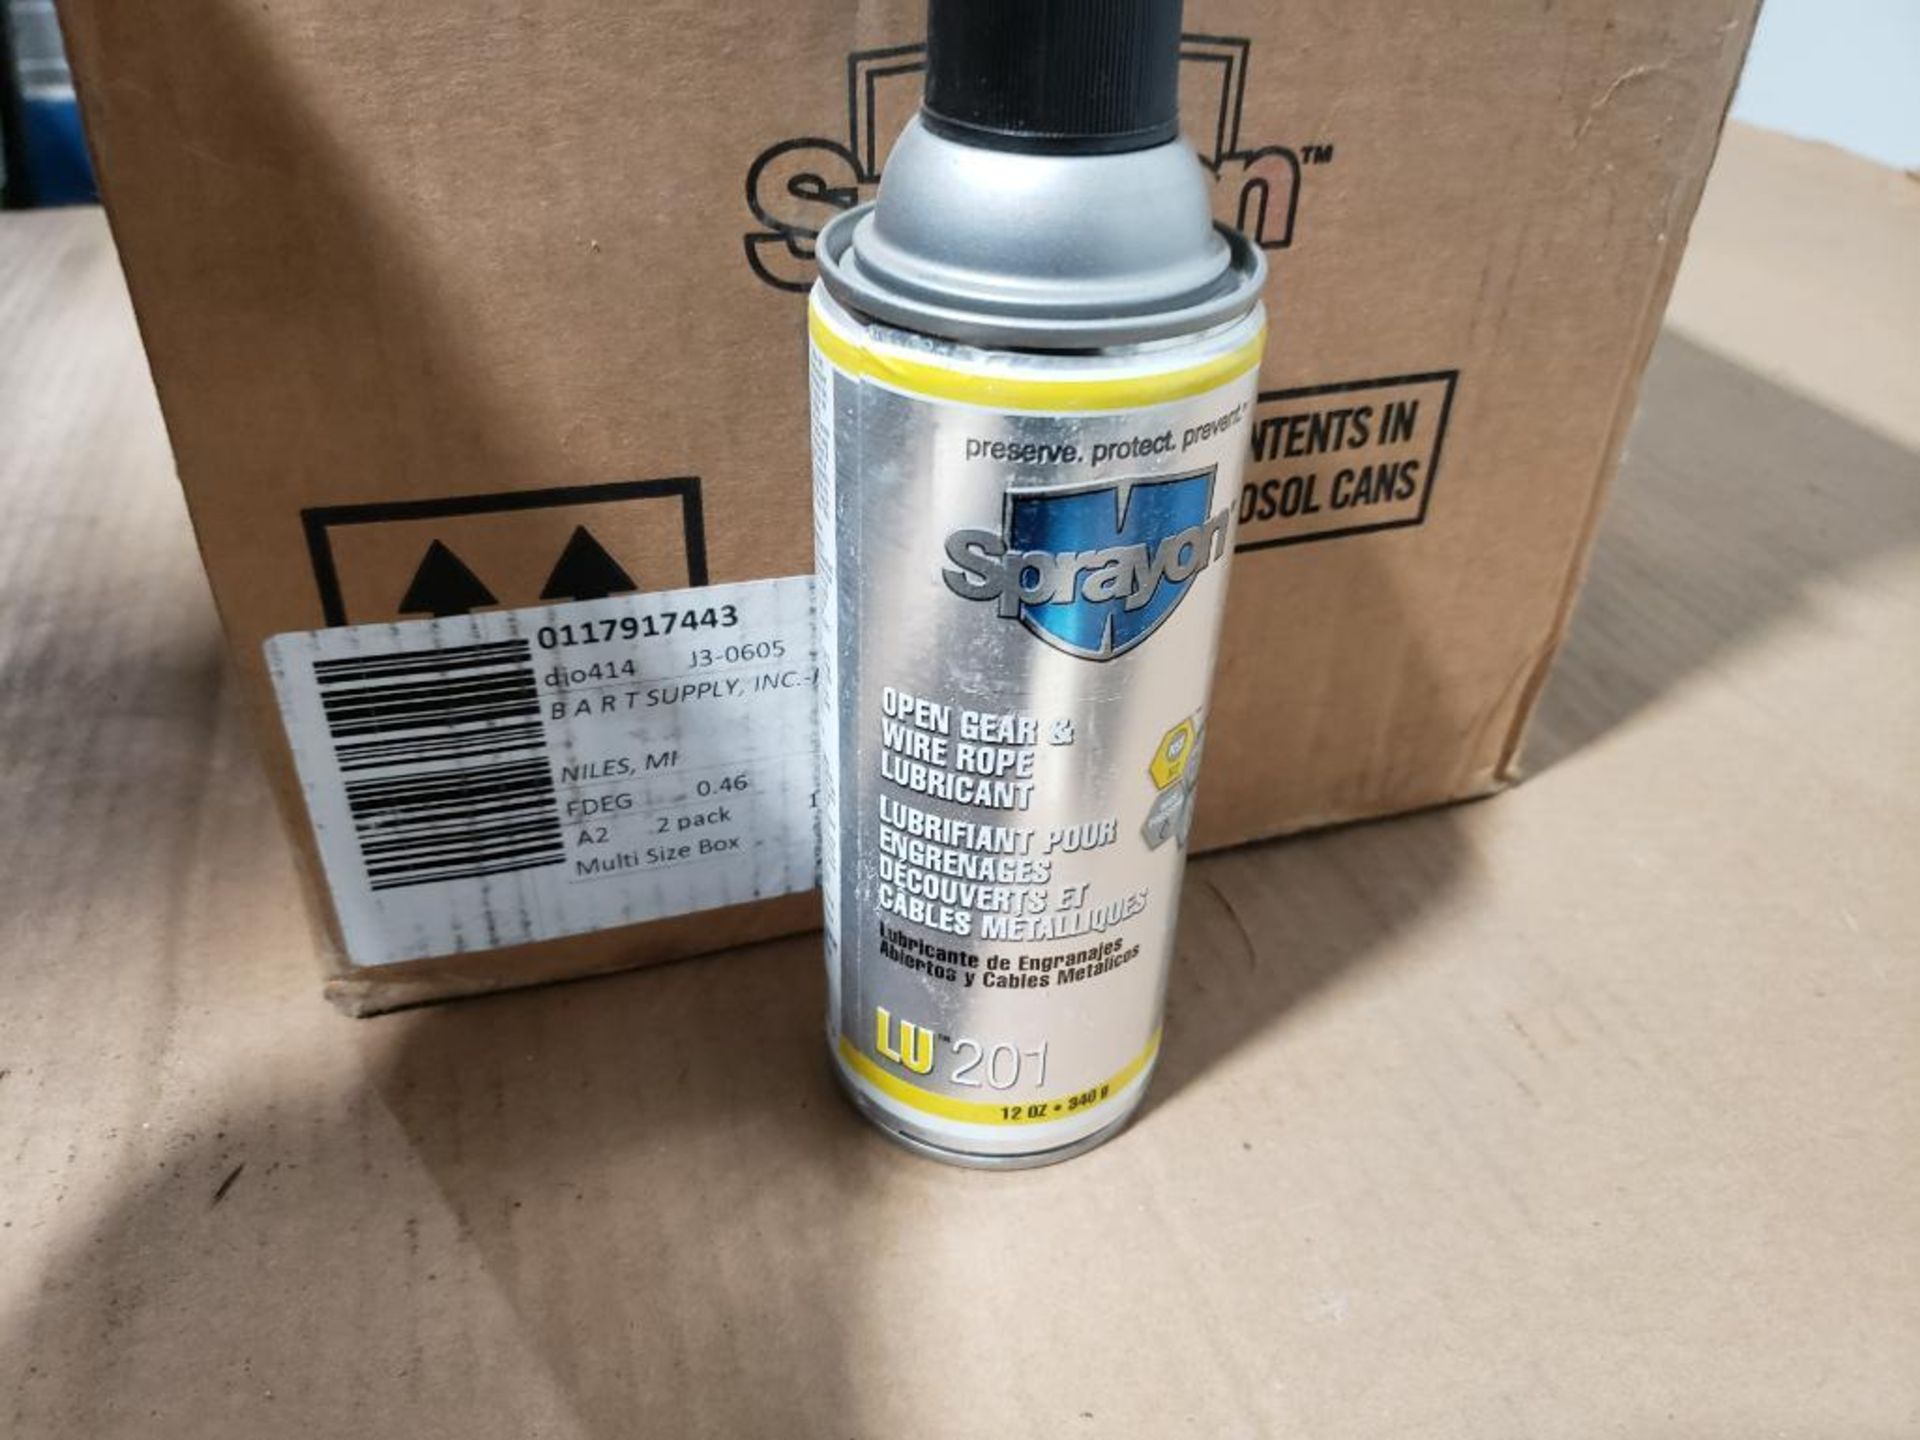 Qty 11 - Sprayon lubricant. LU201.